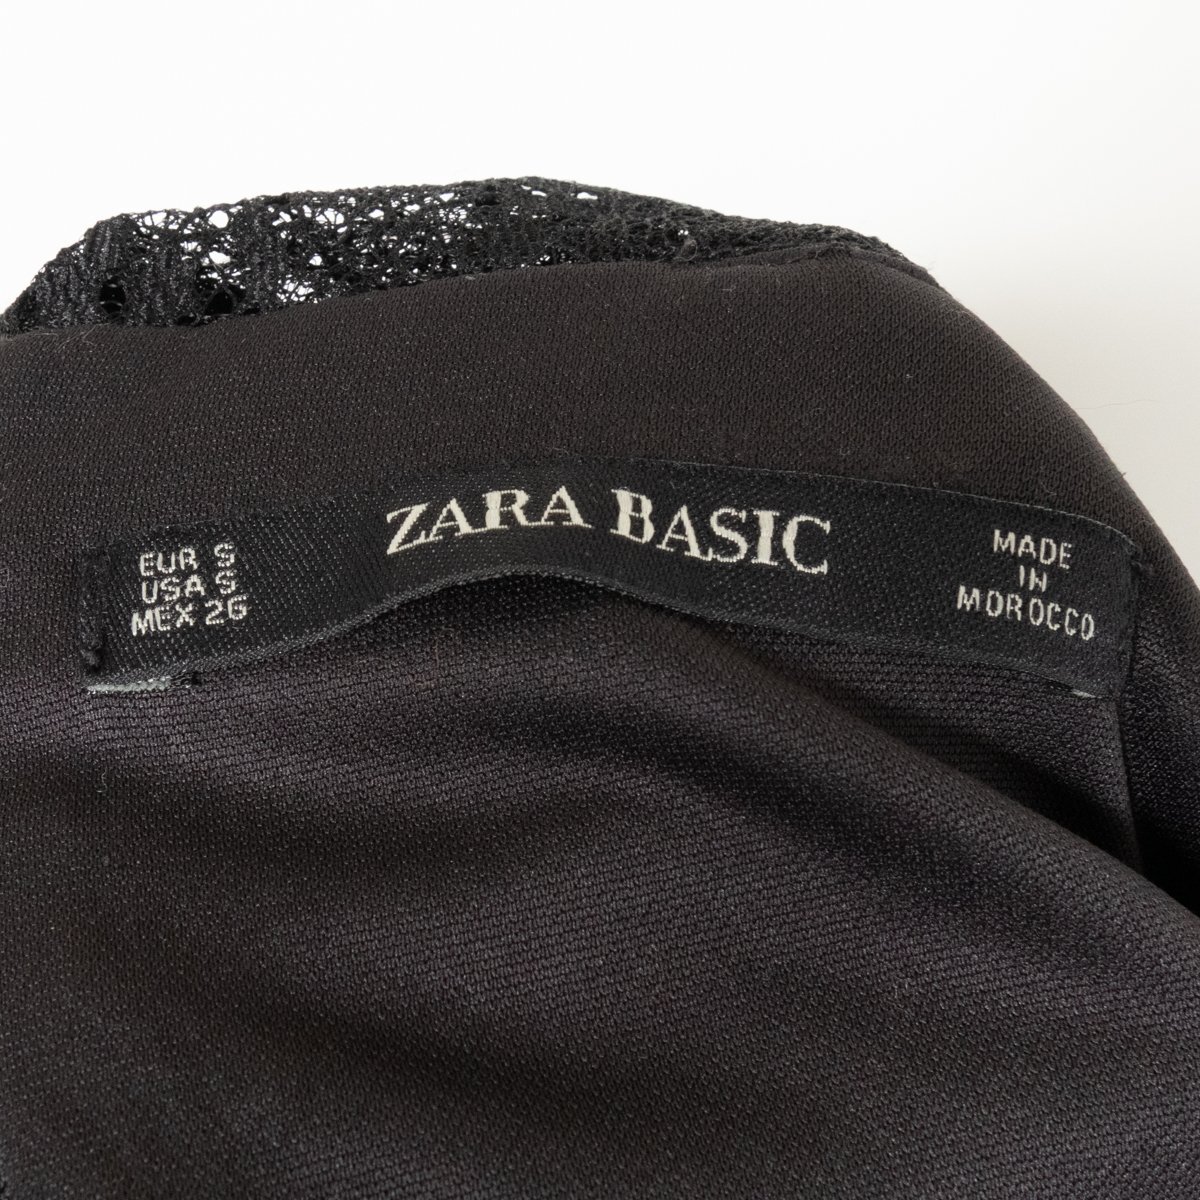 ZARA BASIC ザラ ベーシック レース切り替え オールインワン ワイドパンツ USA S アセテート ブラック 黒 綺麗め エレガンス フォーマルの画像2